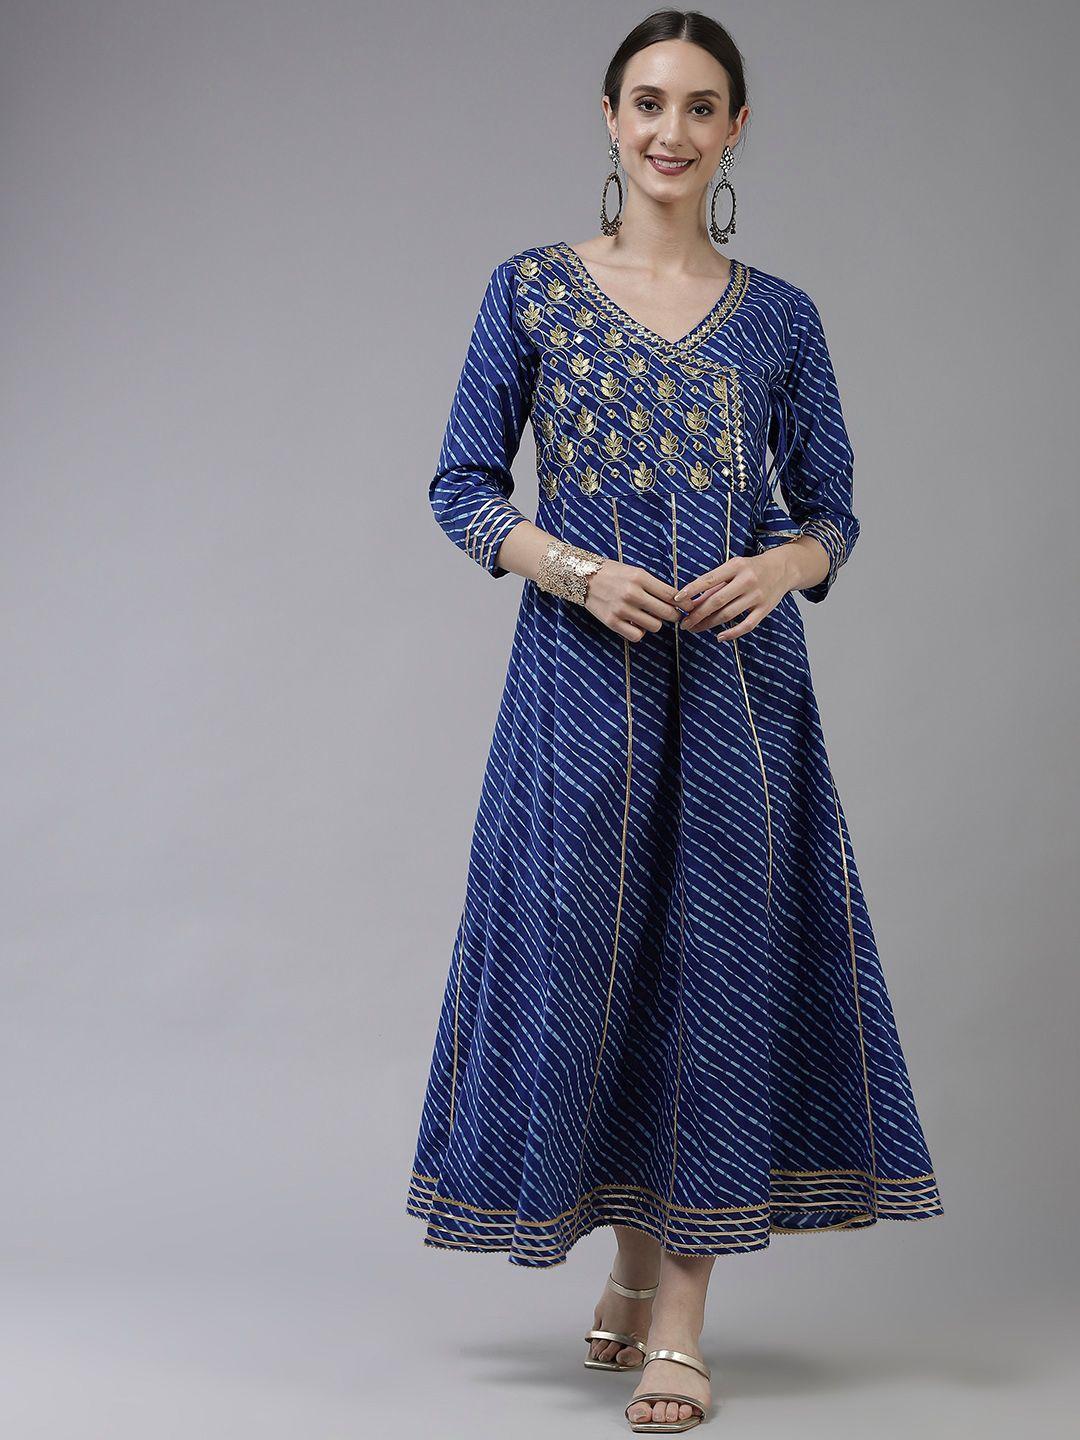 yufta blue ethnic motifs embroidered gotta patti pure cotton ethnic maxi dress